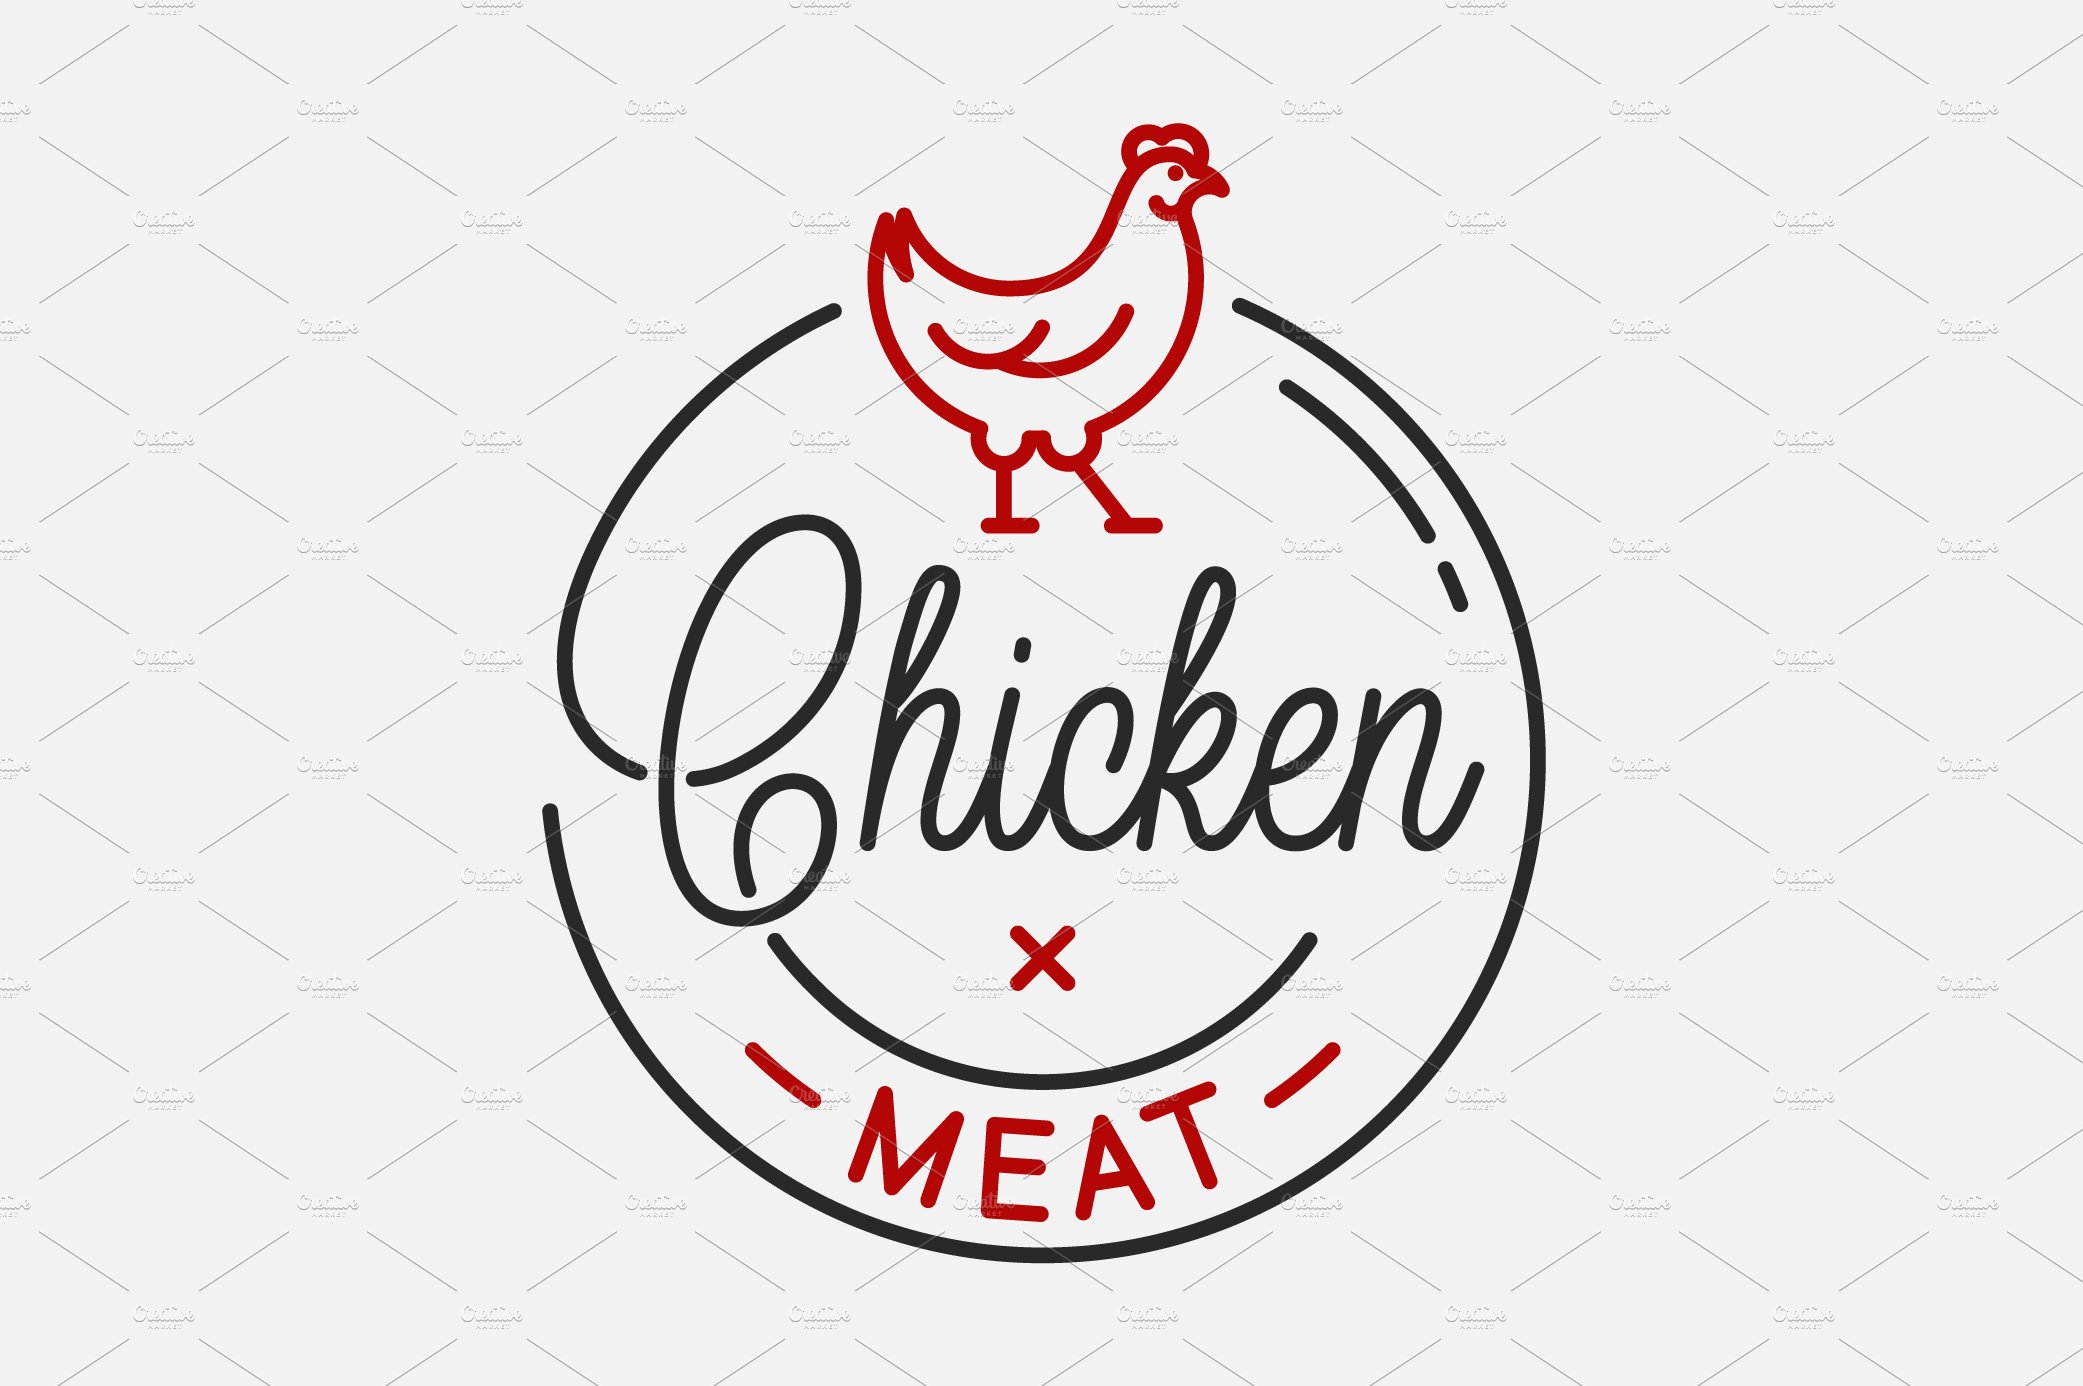 Meat Logo